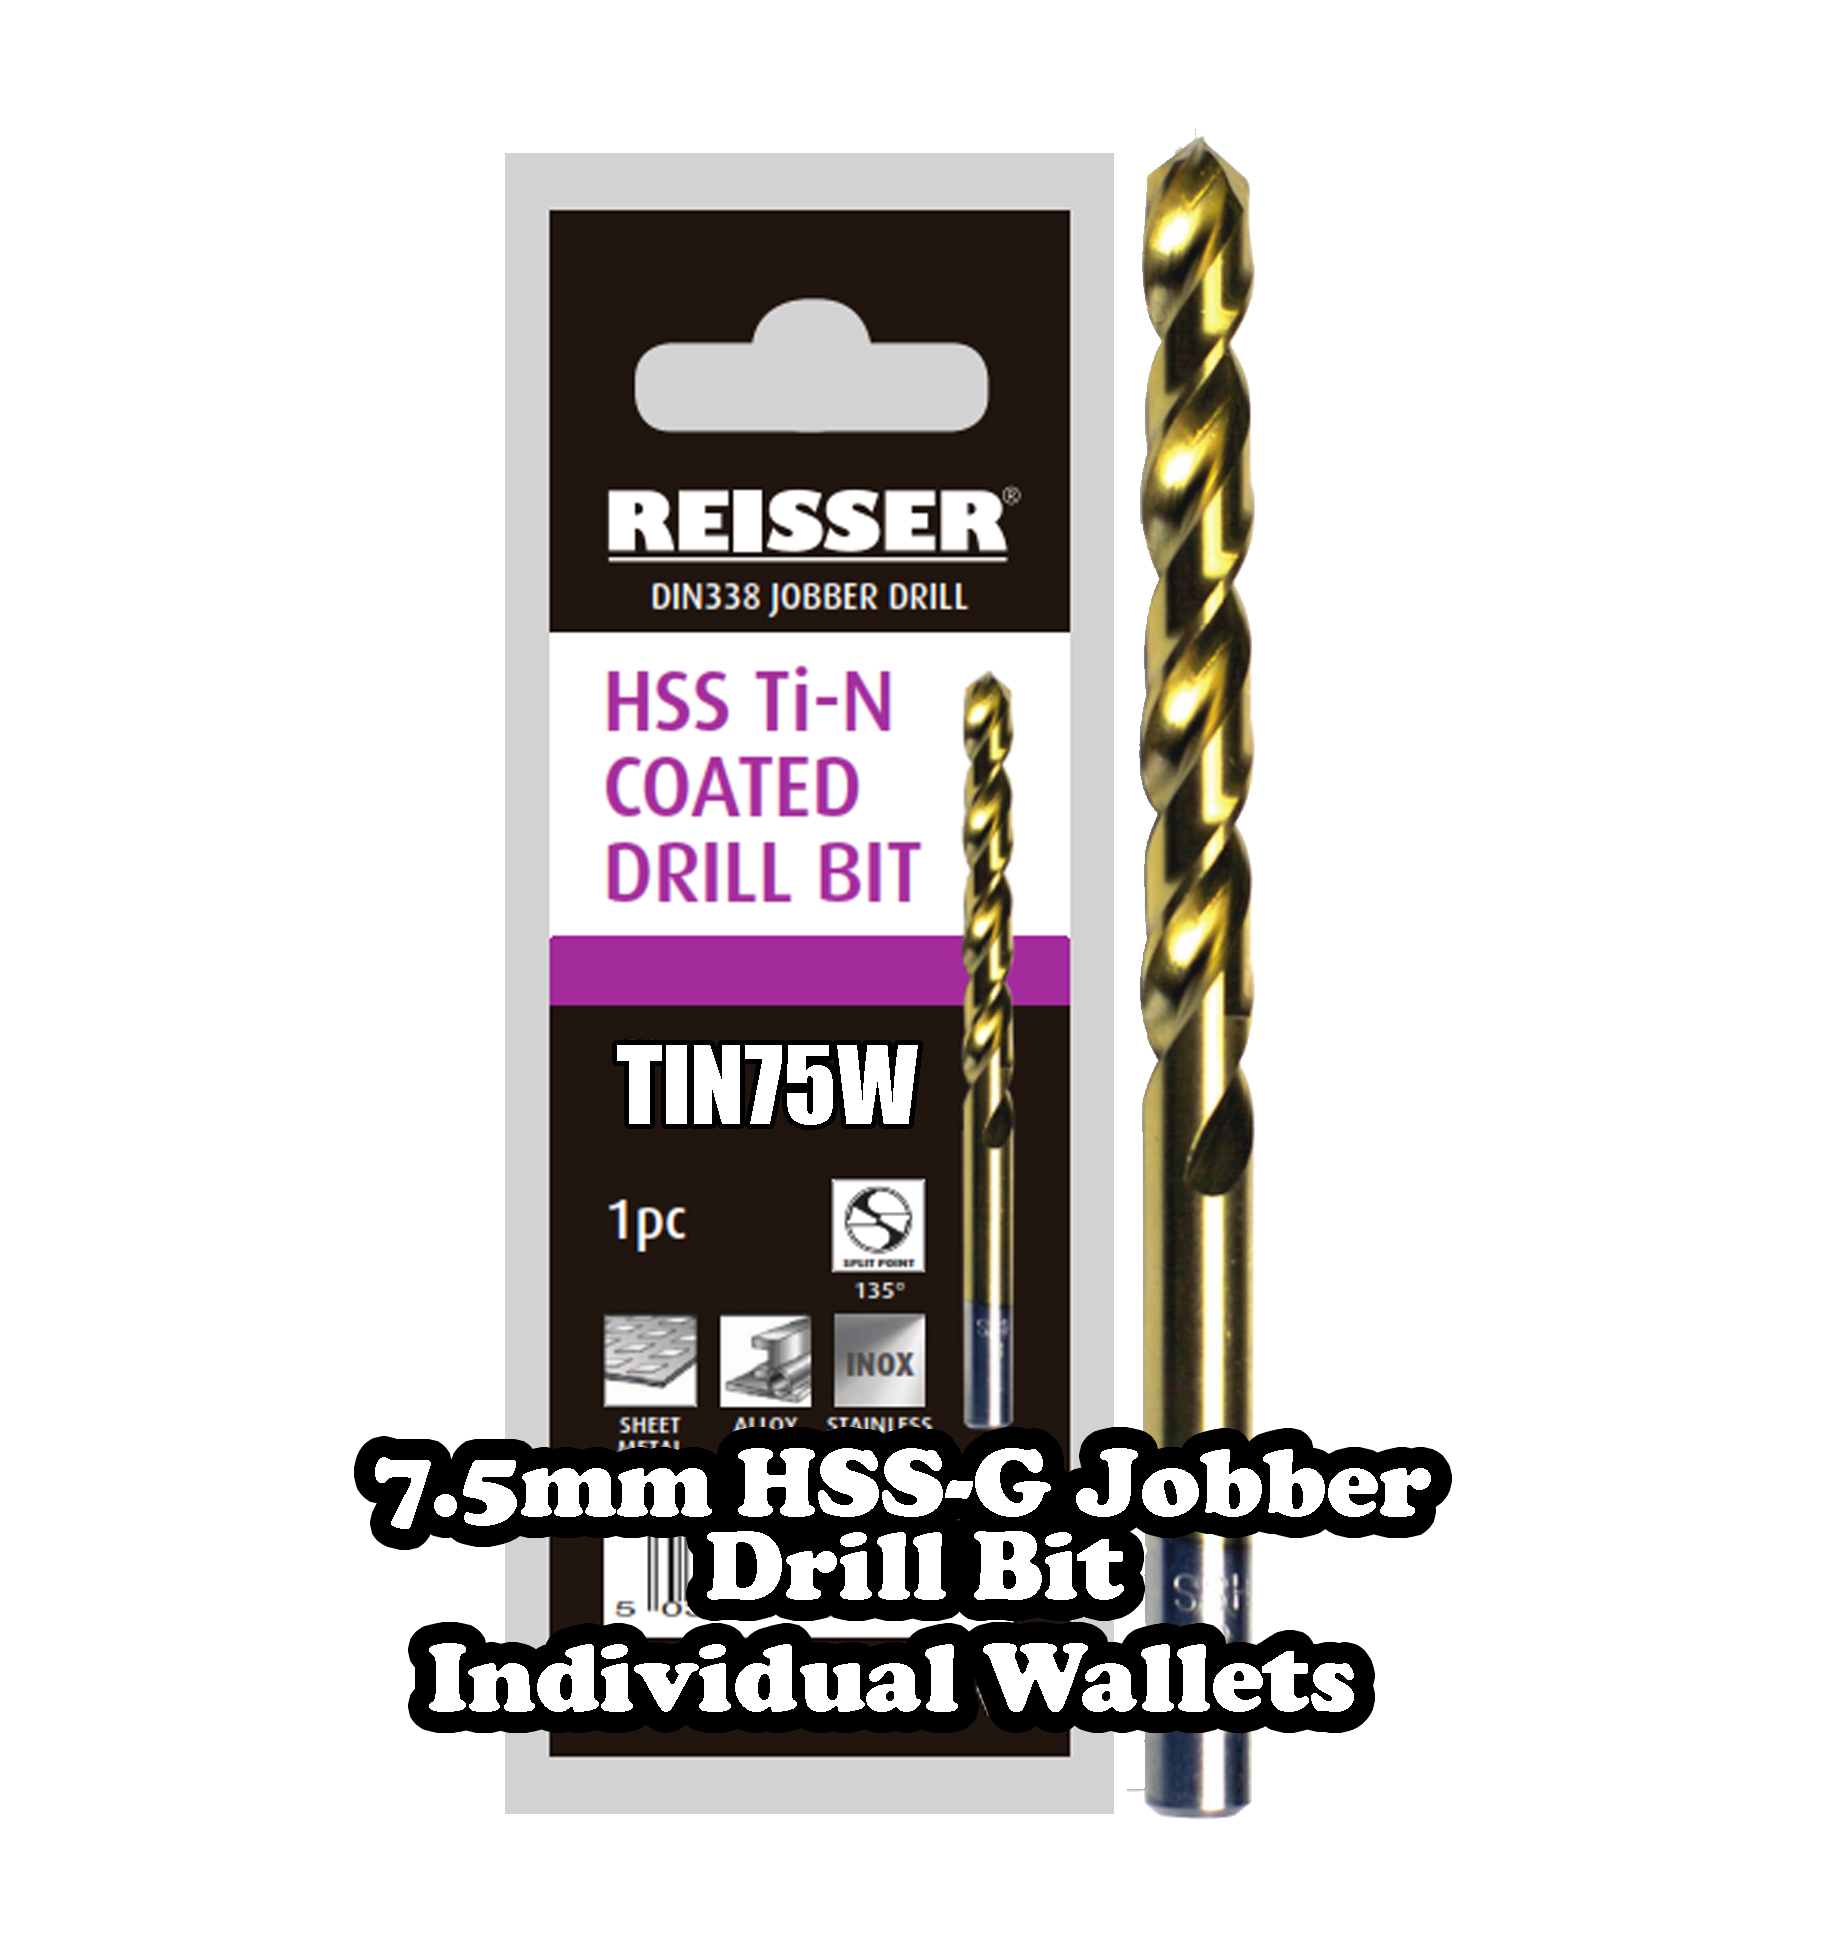 7.5mm HSS Jobber Drill BIt (SINGLE WALLET)